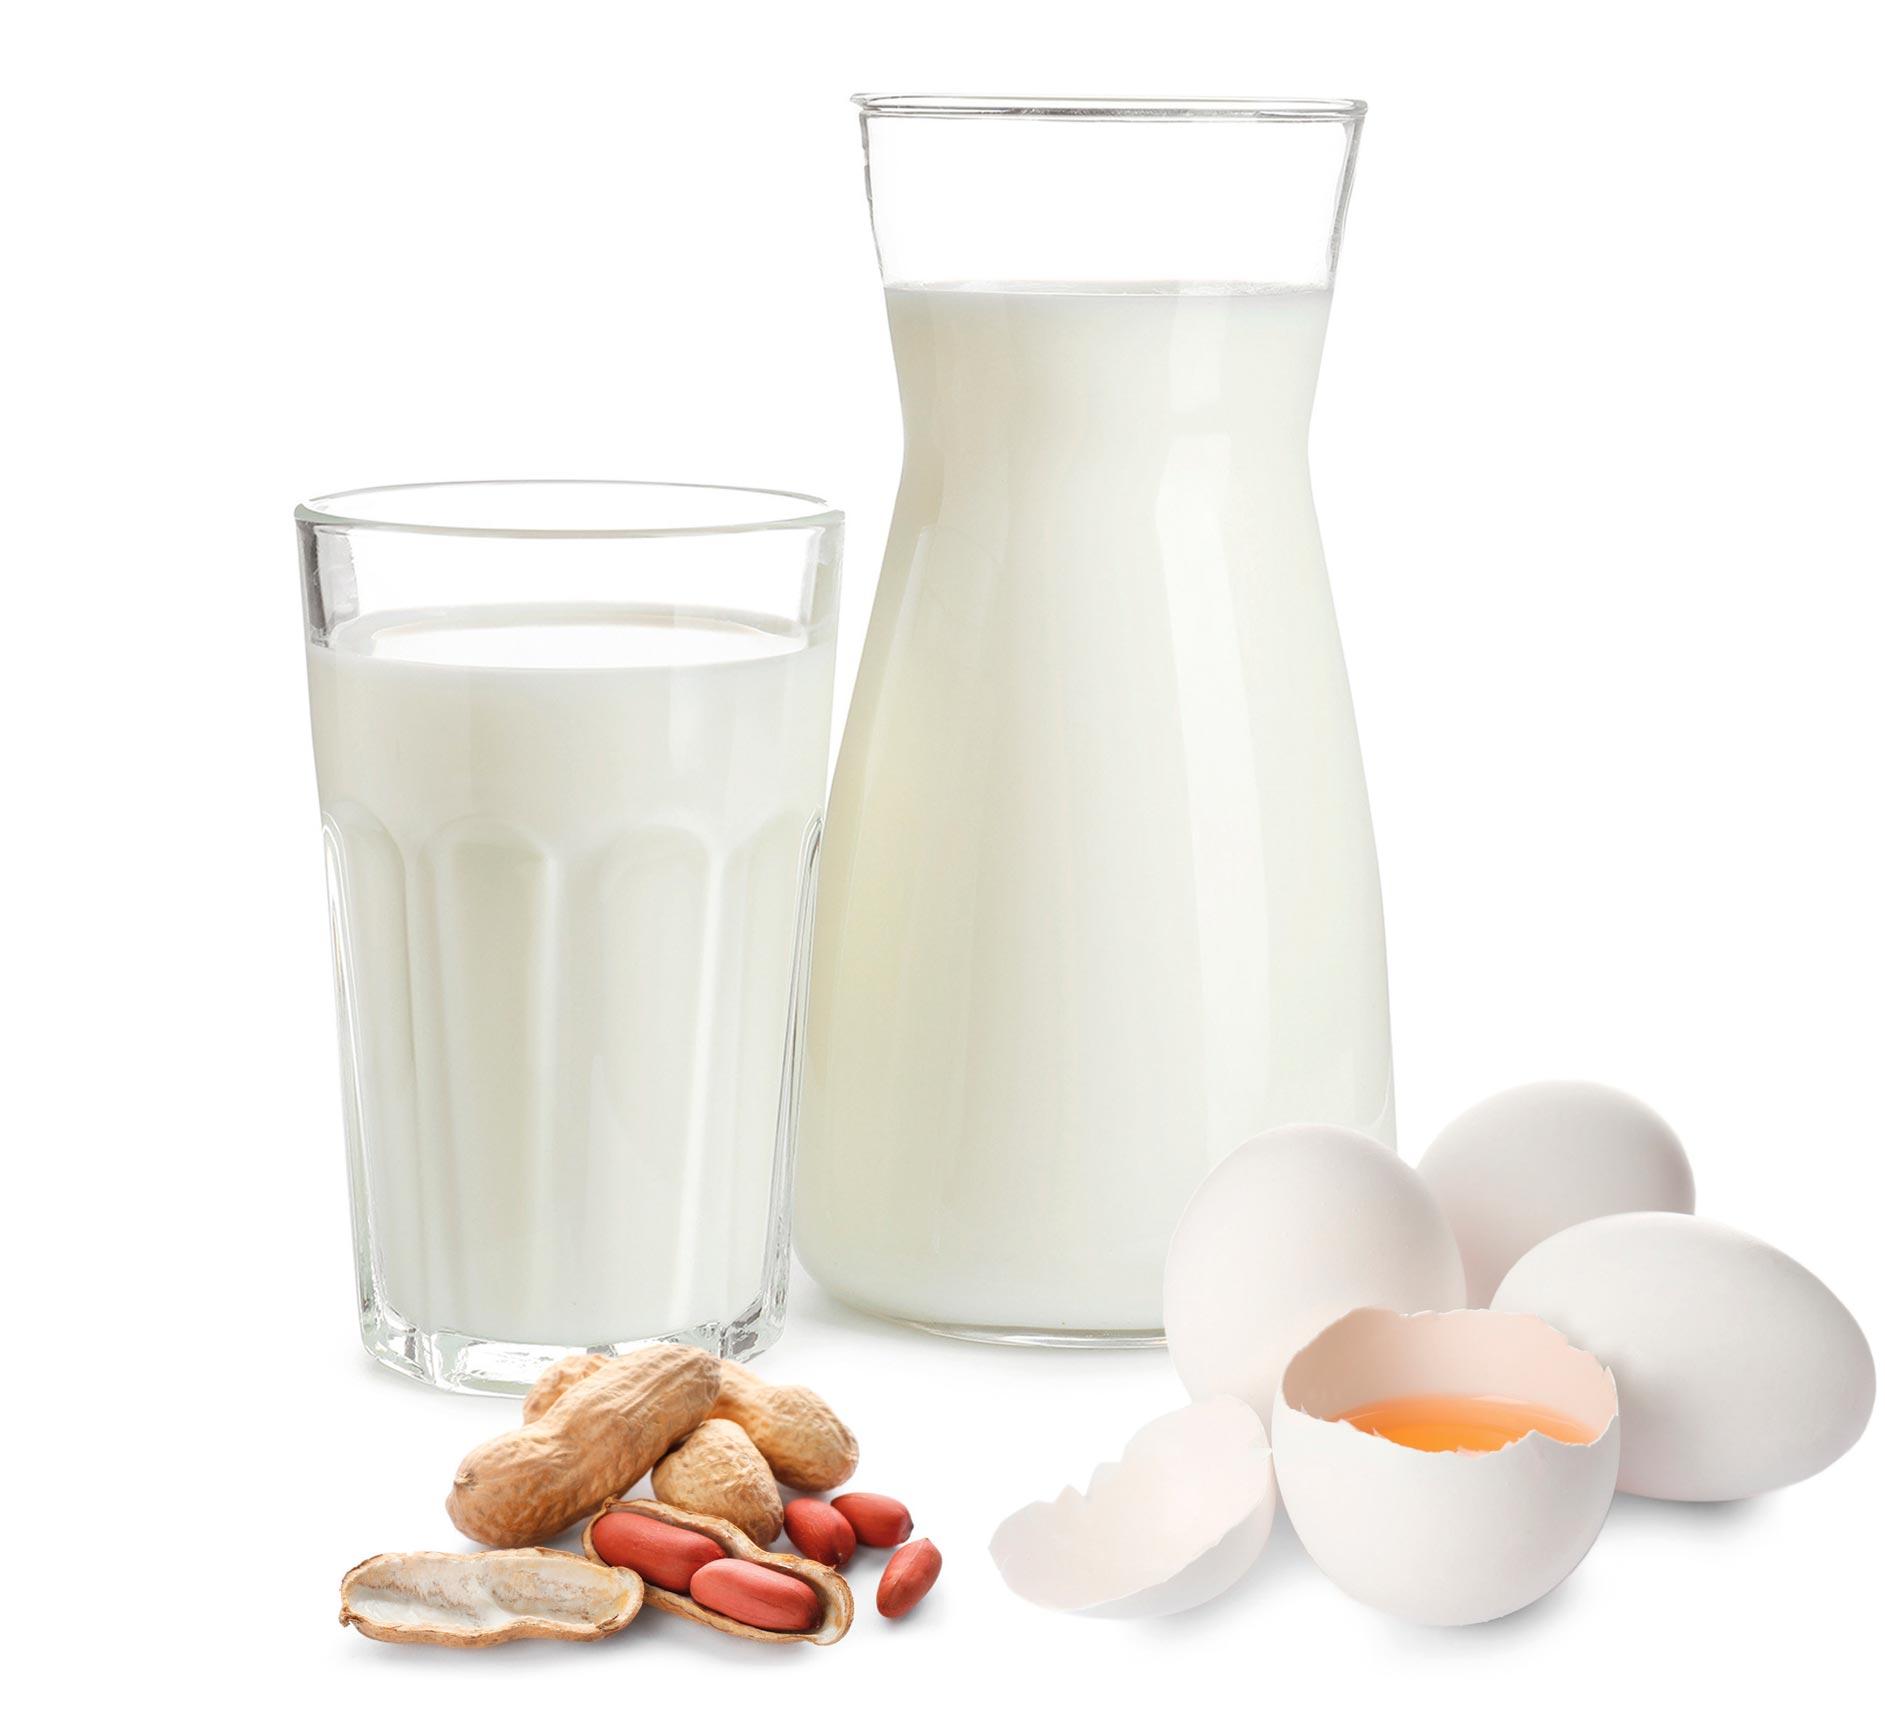 Milch im Krug und Glas sowie Eier und Erdnüsse